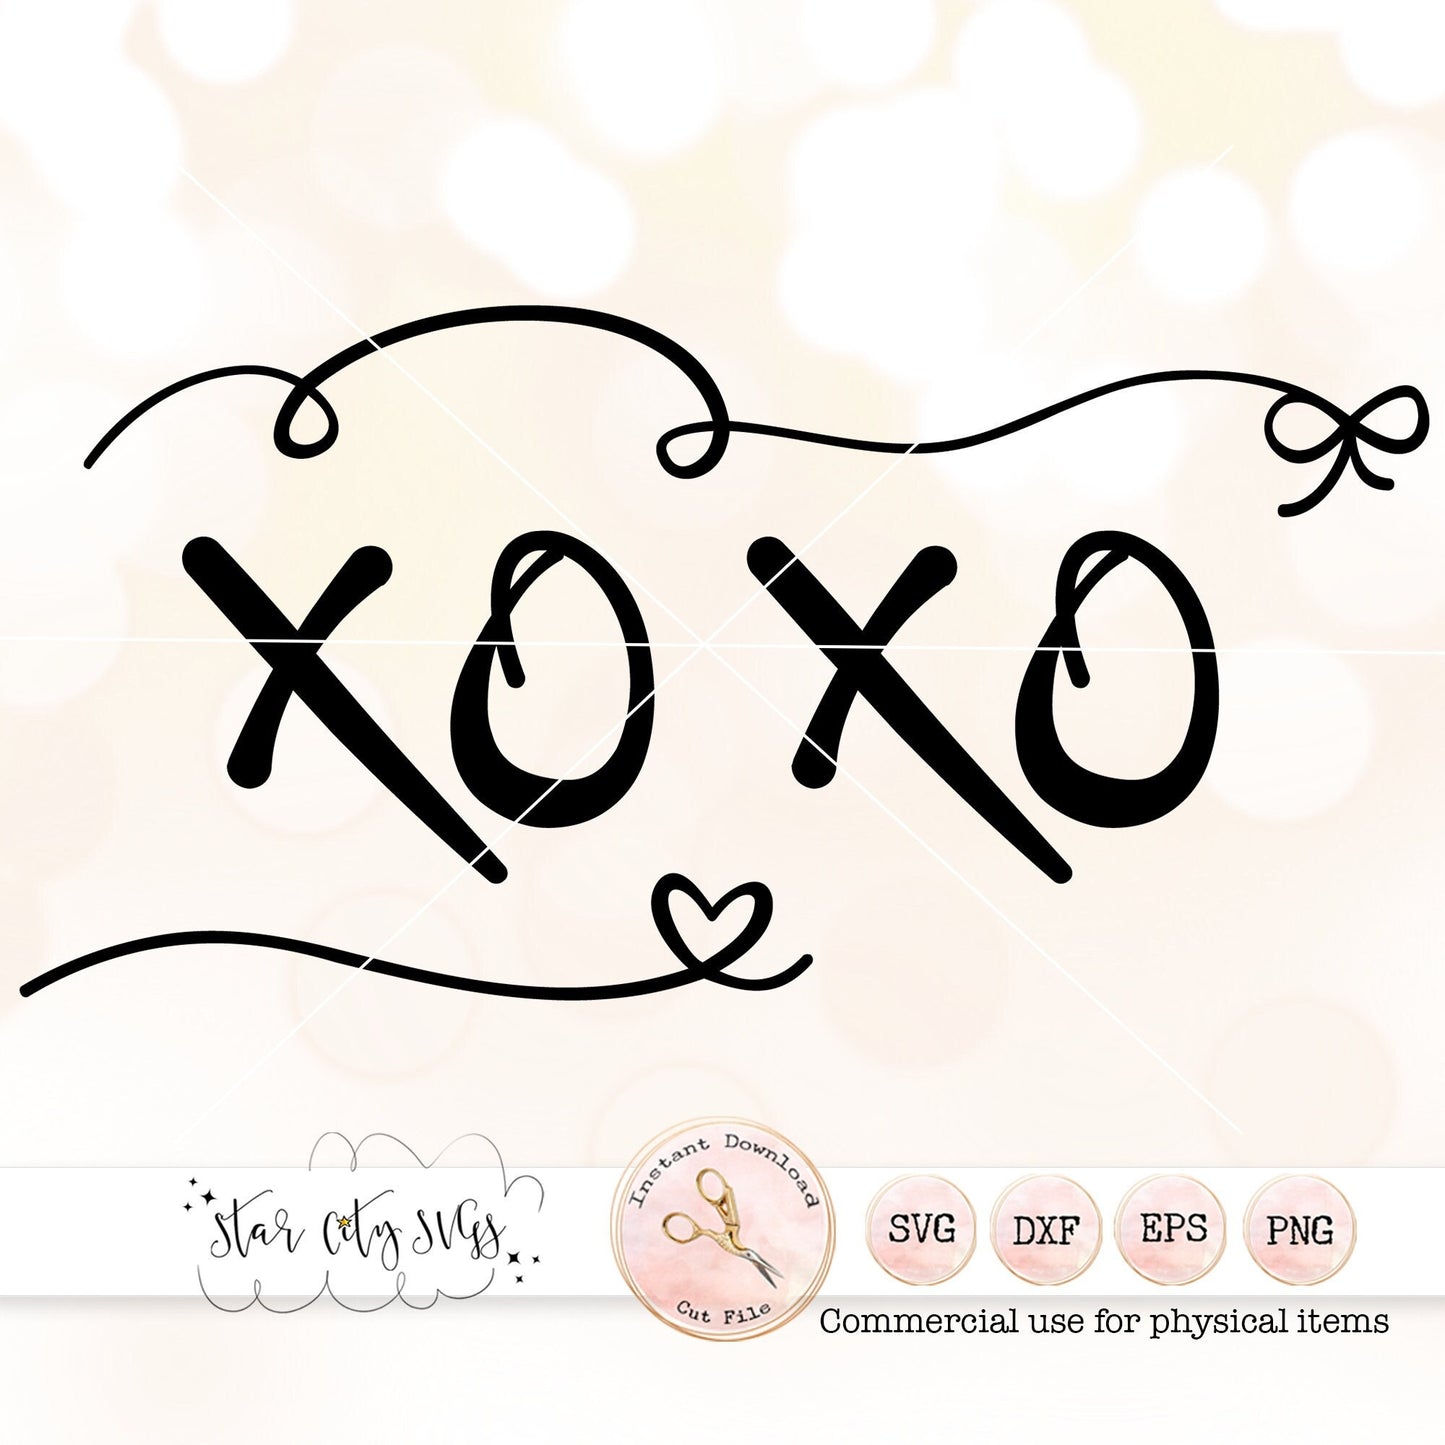 XOXO Valentines Day SVG